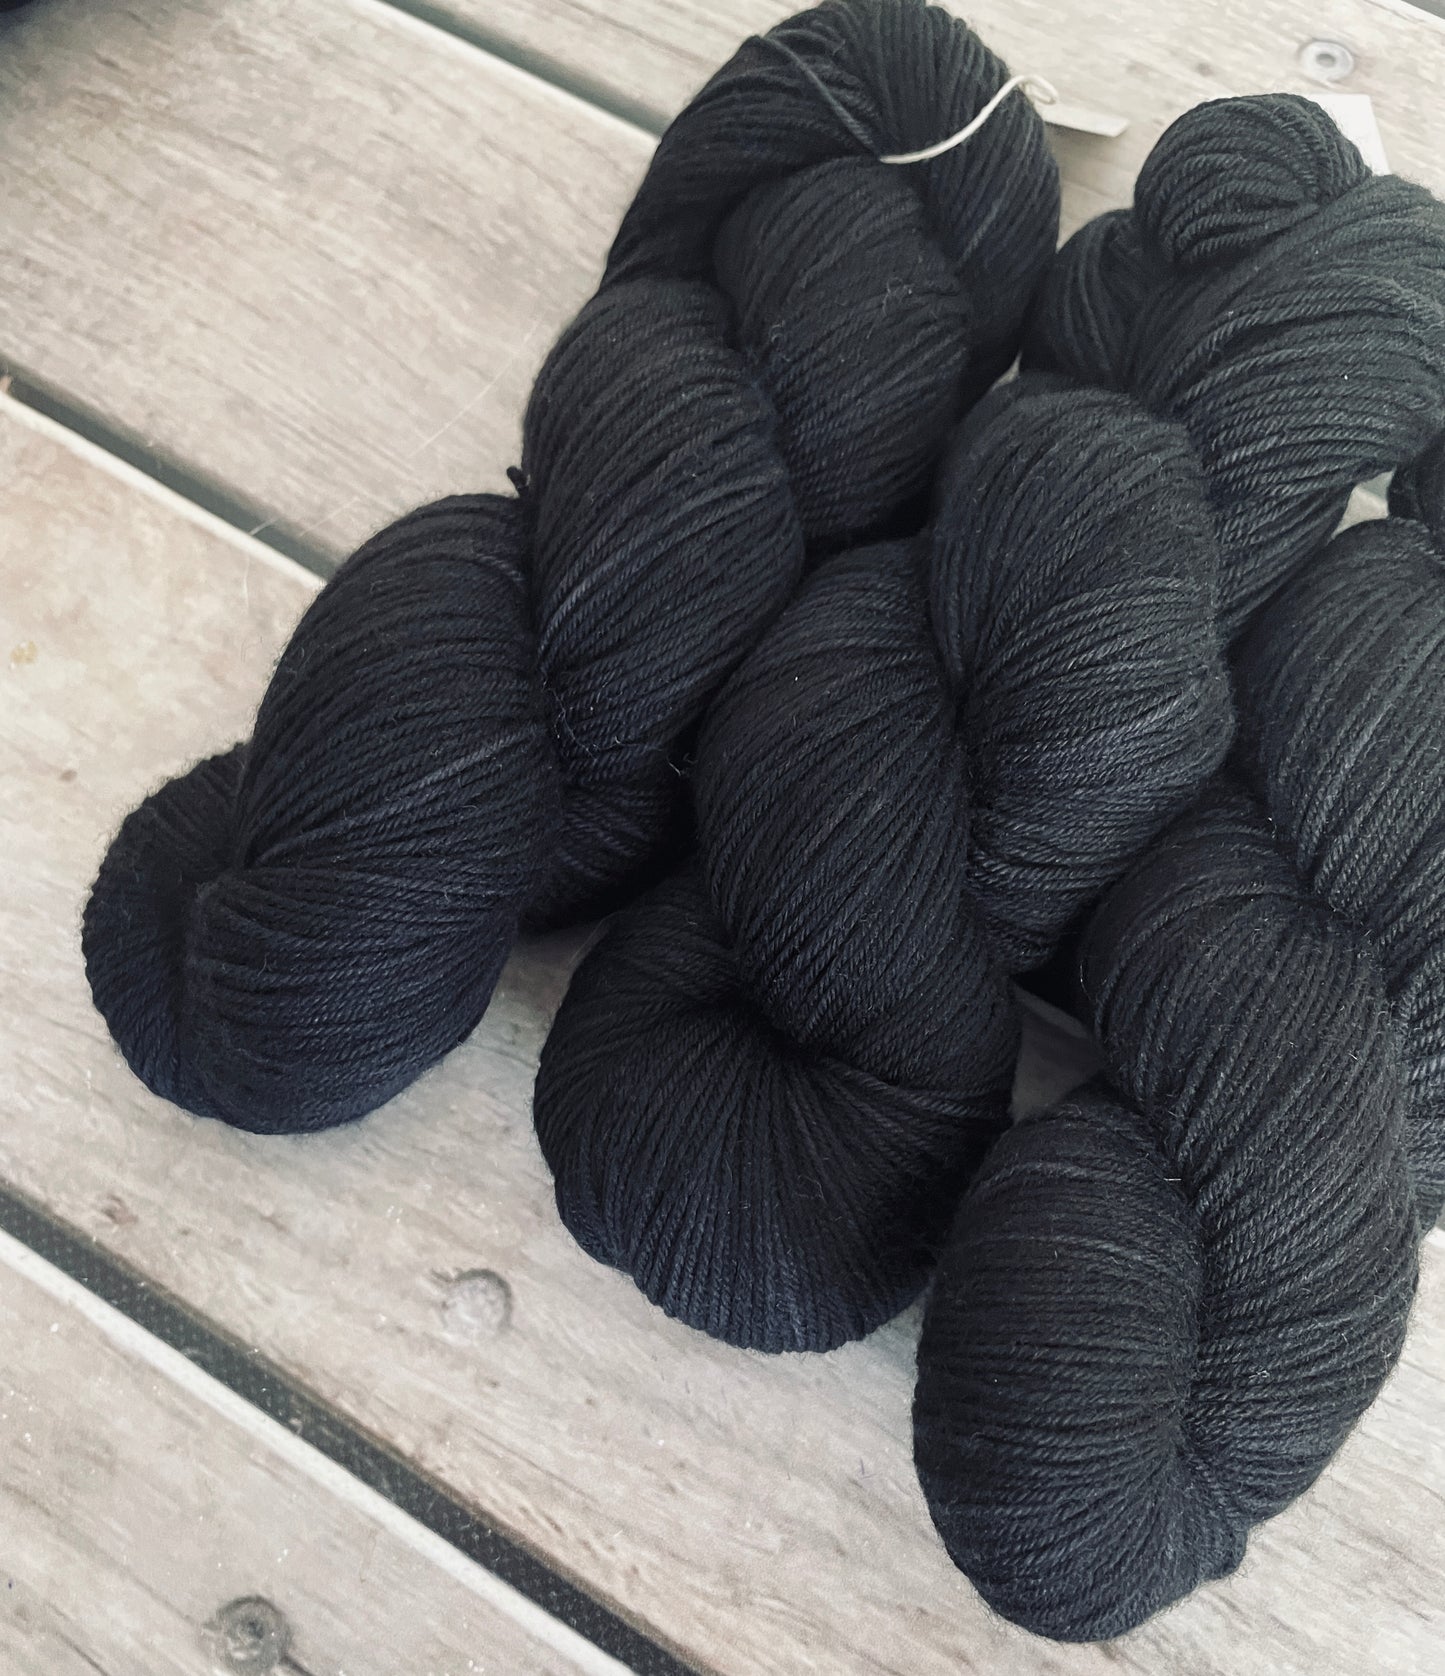 Raven - Darjeeling 4 ply sock yarn in merino and nylon